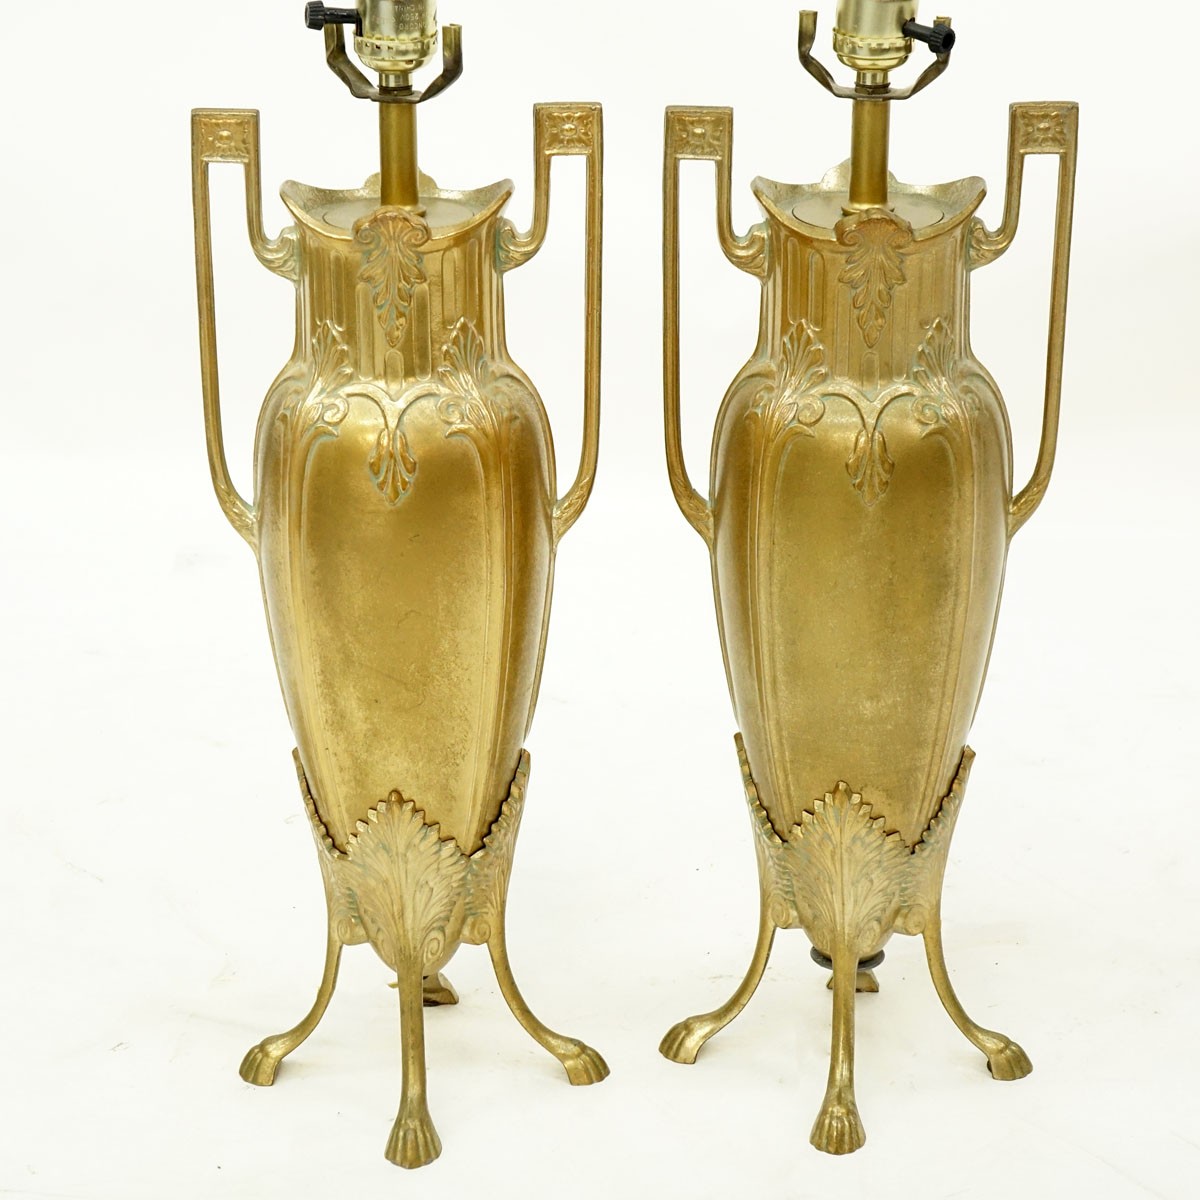 Pair of Art Nouveau Style Gilt Brass Lamps. Good condition.